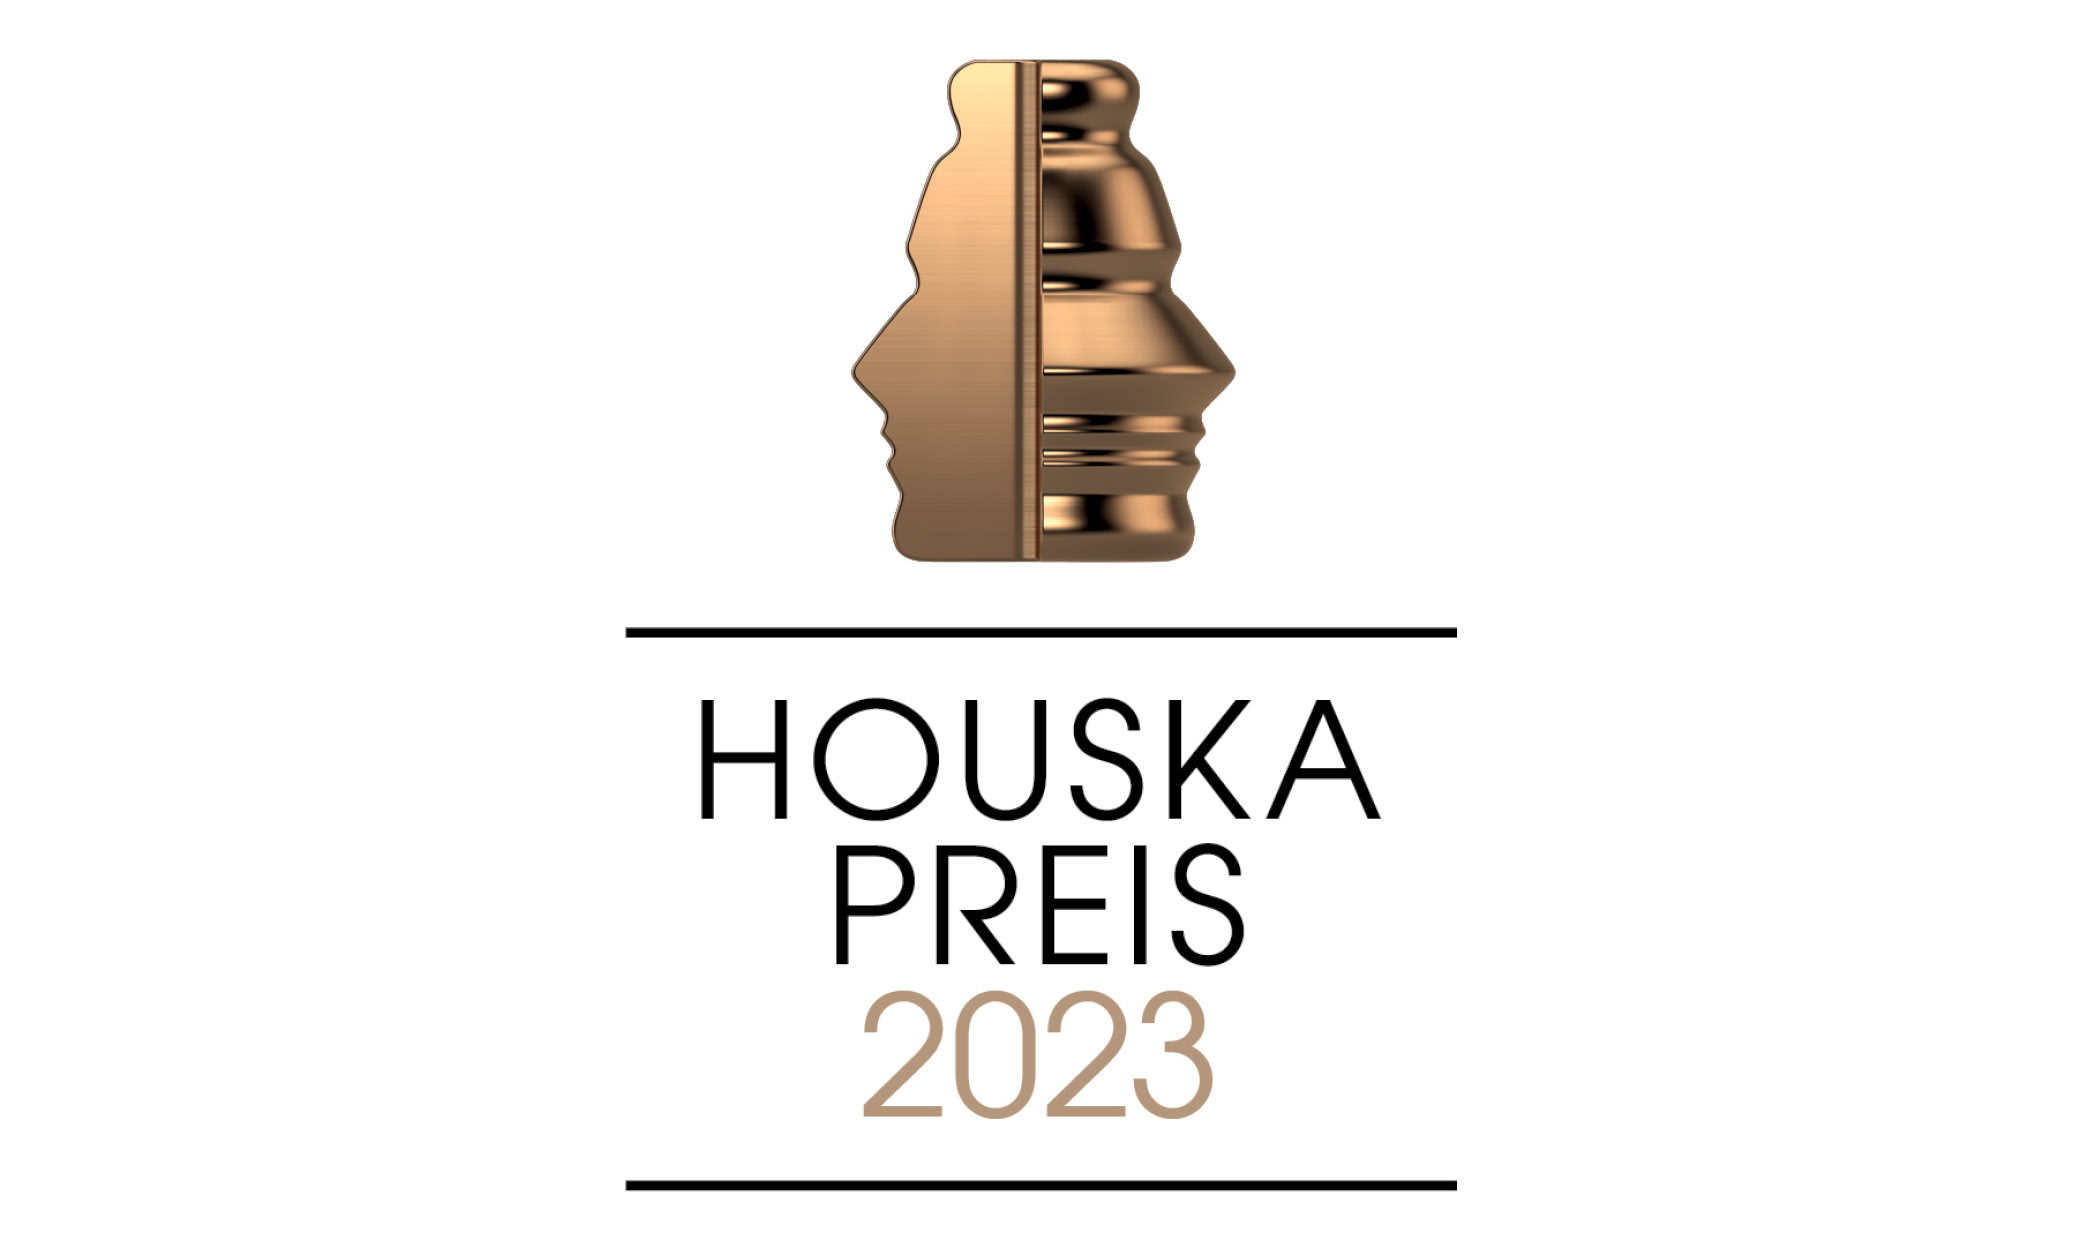 Houska Preis 2023